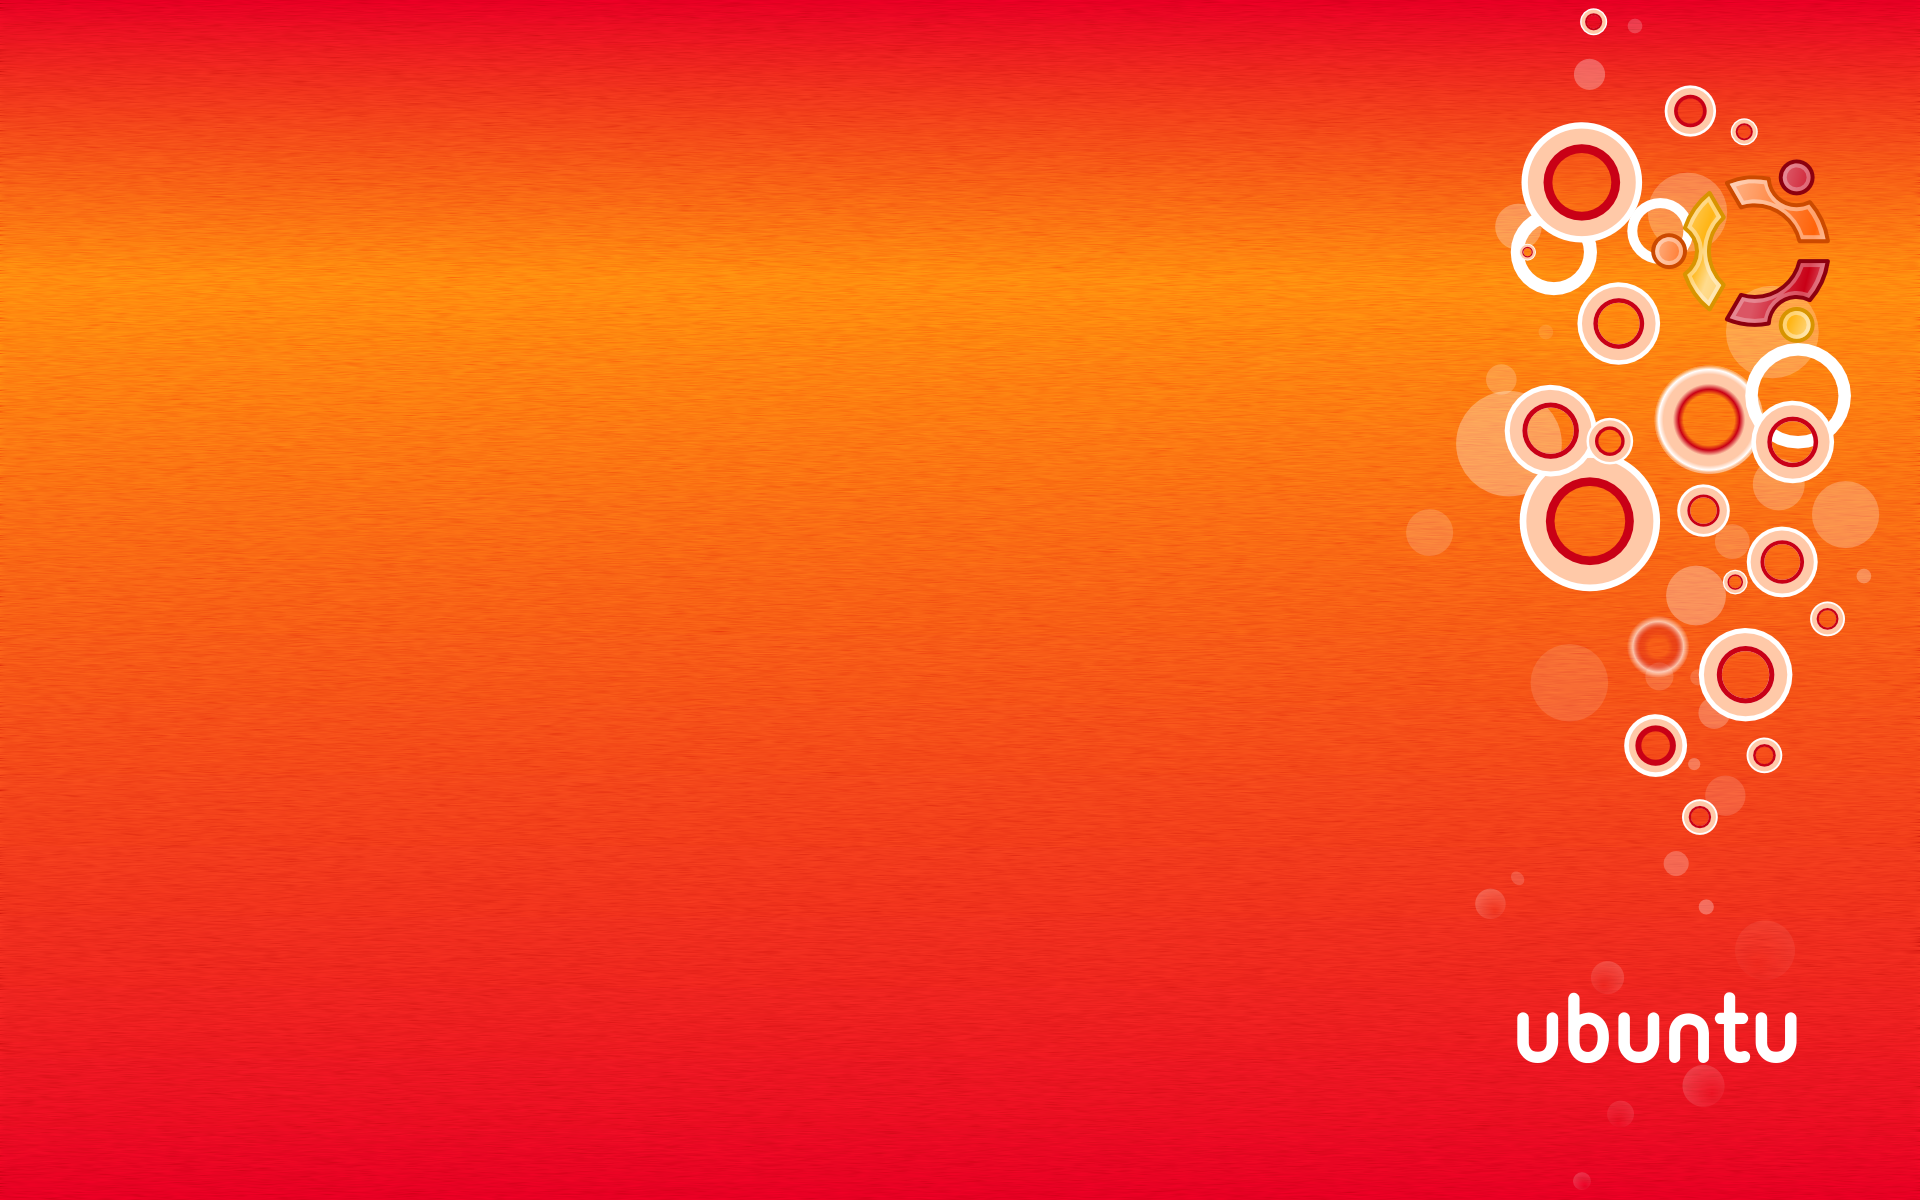 Incredible Ubuntu wallpaper collection: Bộ sưu tập hình nền Ubuntu tuyệt vời với đủ màu sắc và phong cách sẽ khiến bạn không ngừng kinh ngạc và muốn xem nhiều lần. Hãy nhanh chóng khám phá và tận hưởng vẻ đẹp của chúng.